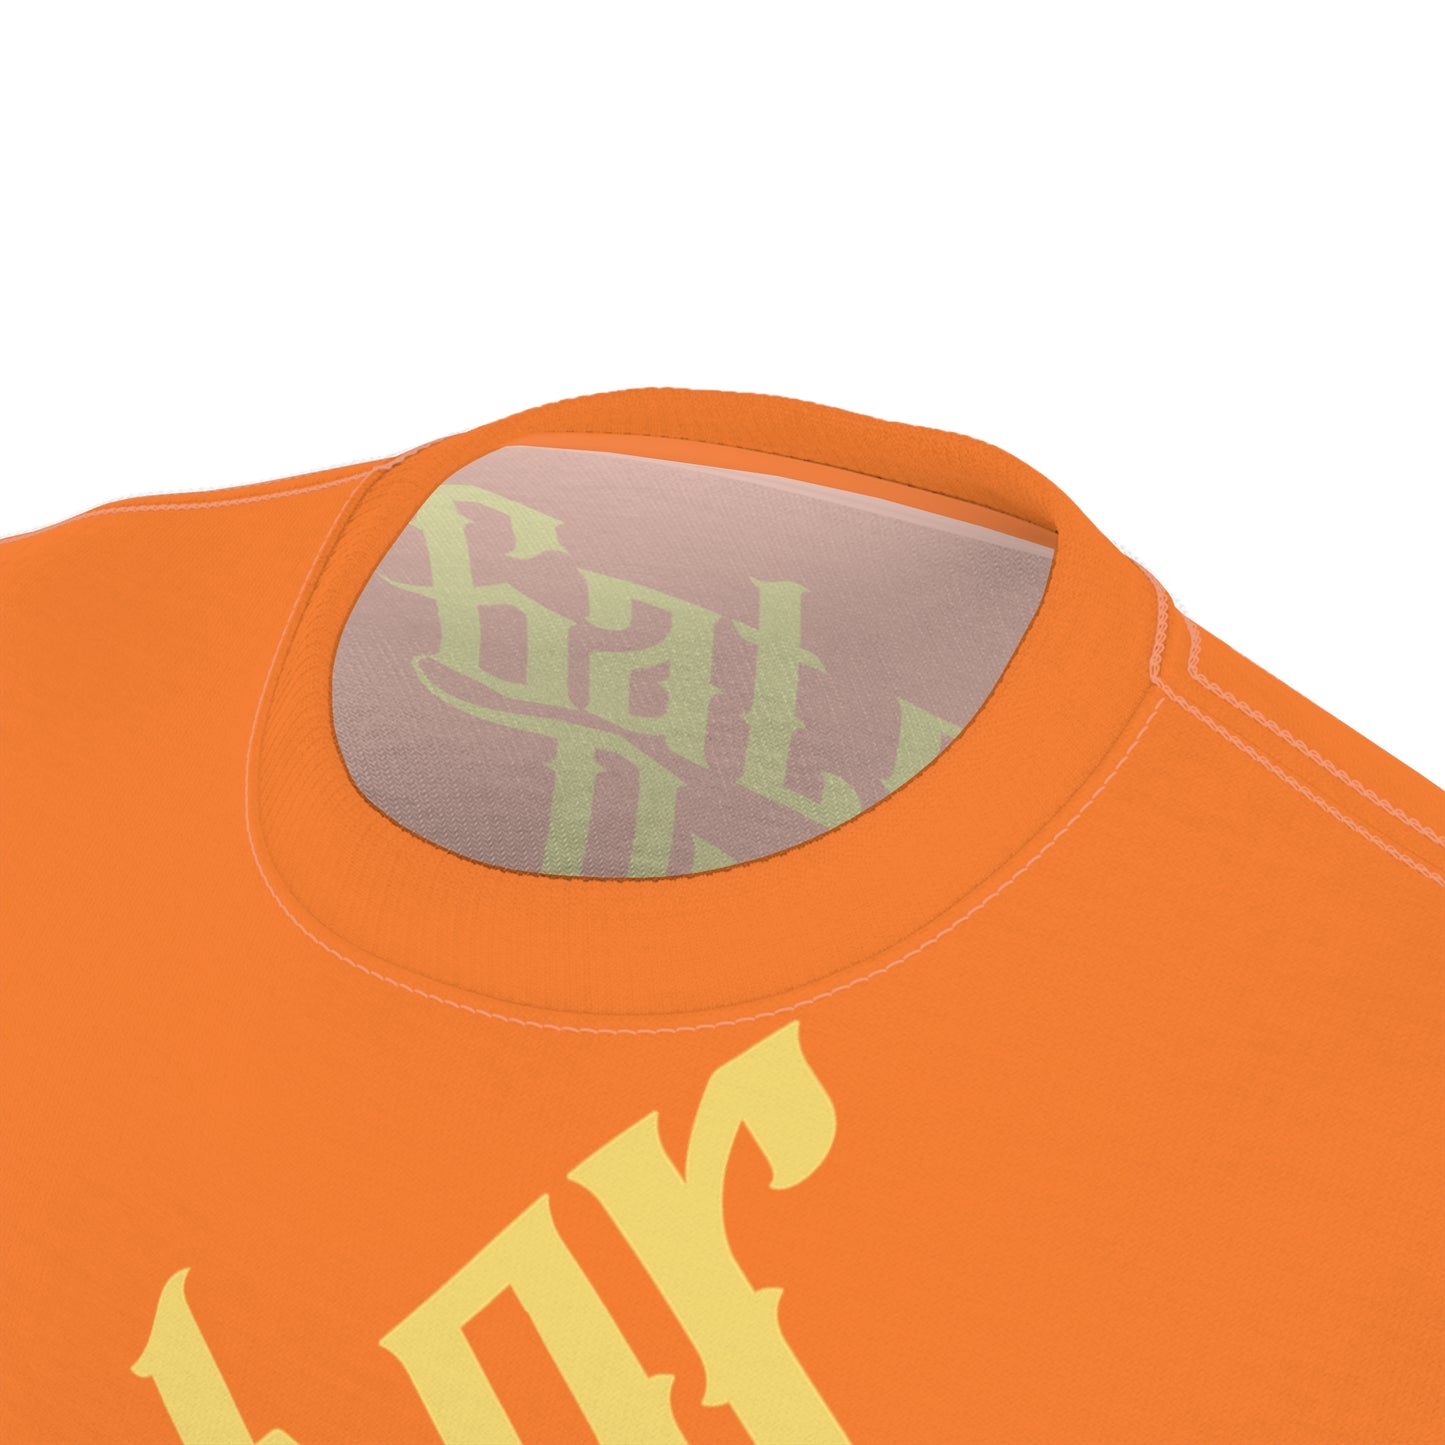 Orange Gator Drip Exclusive Supa-Heavy Excess-Stunna Flex Alligator Playuz Limited Edition OG Multi-Logo Rich Daddy “White Diddy Playuh Best Friend Benji" Unisex Cut & Sew Playuz Tee